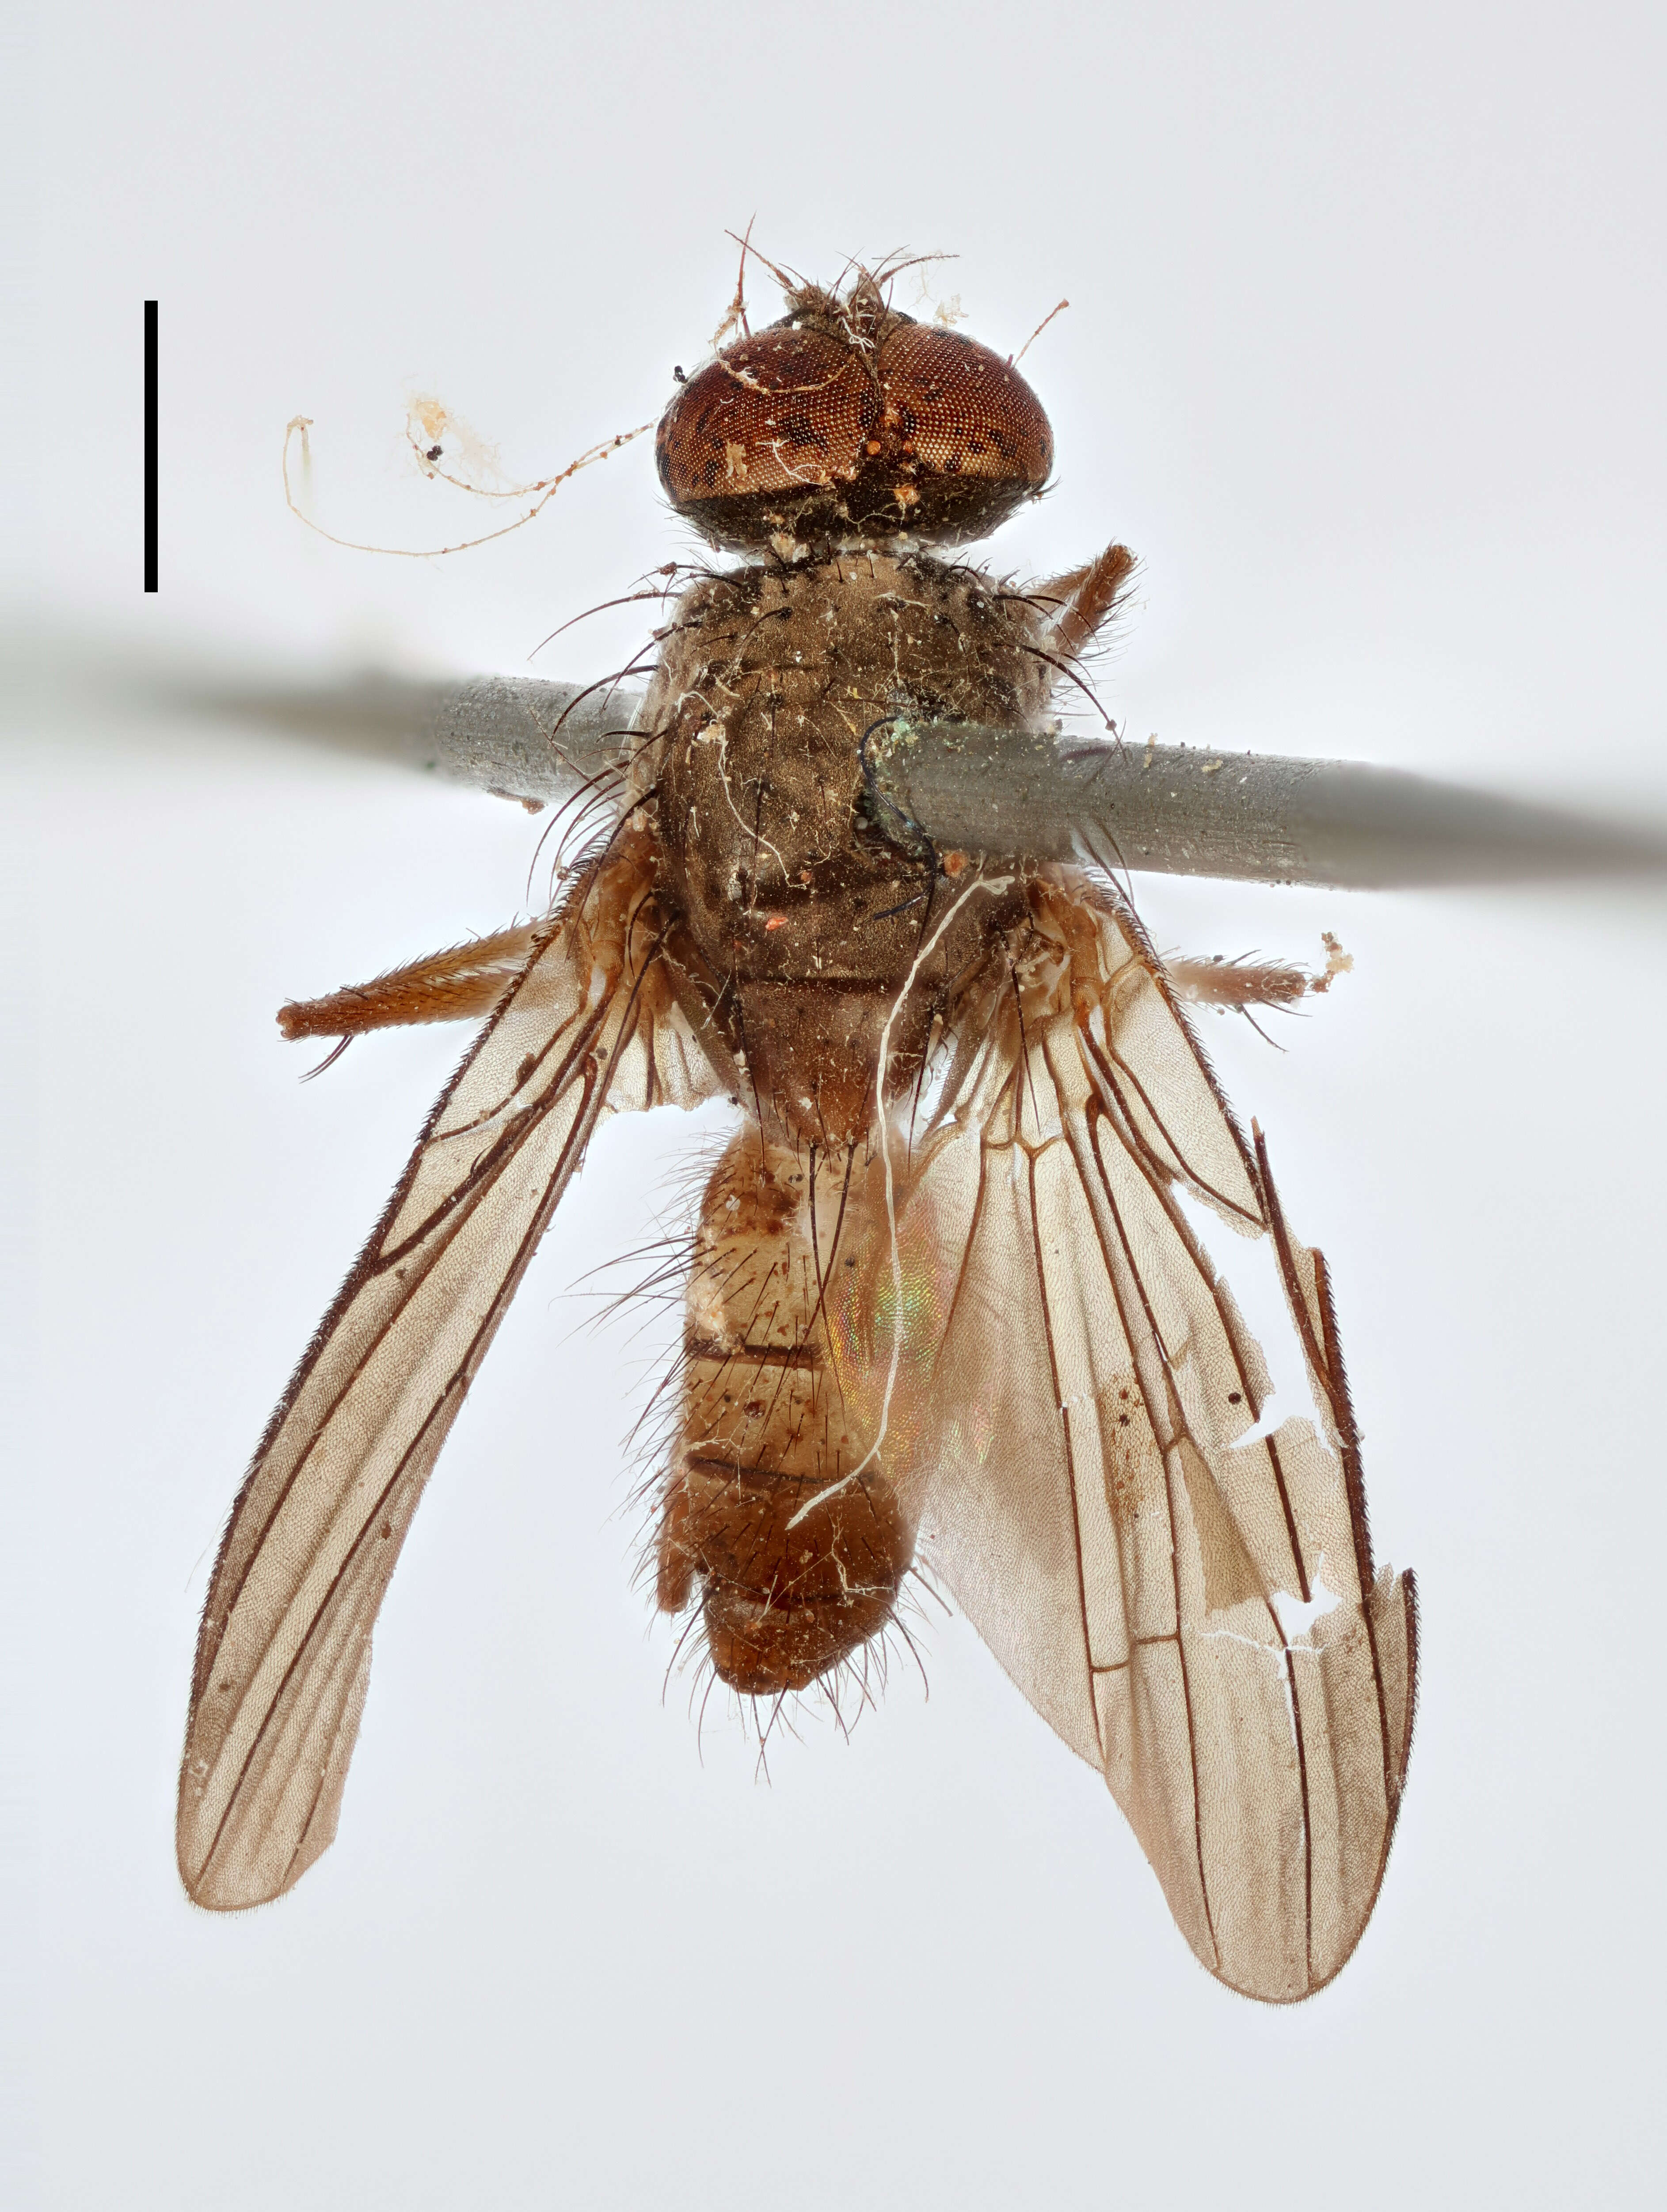 Image of root-maggot flies